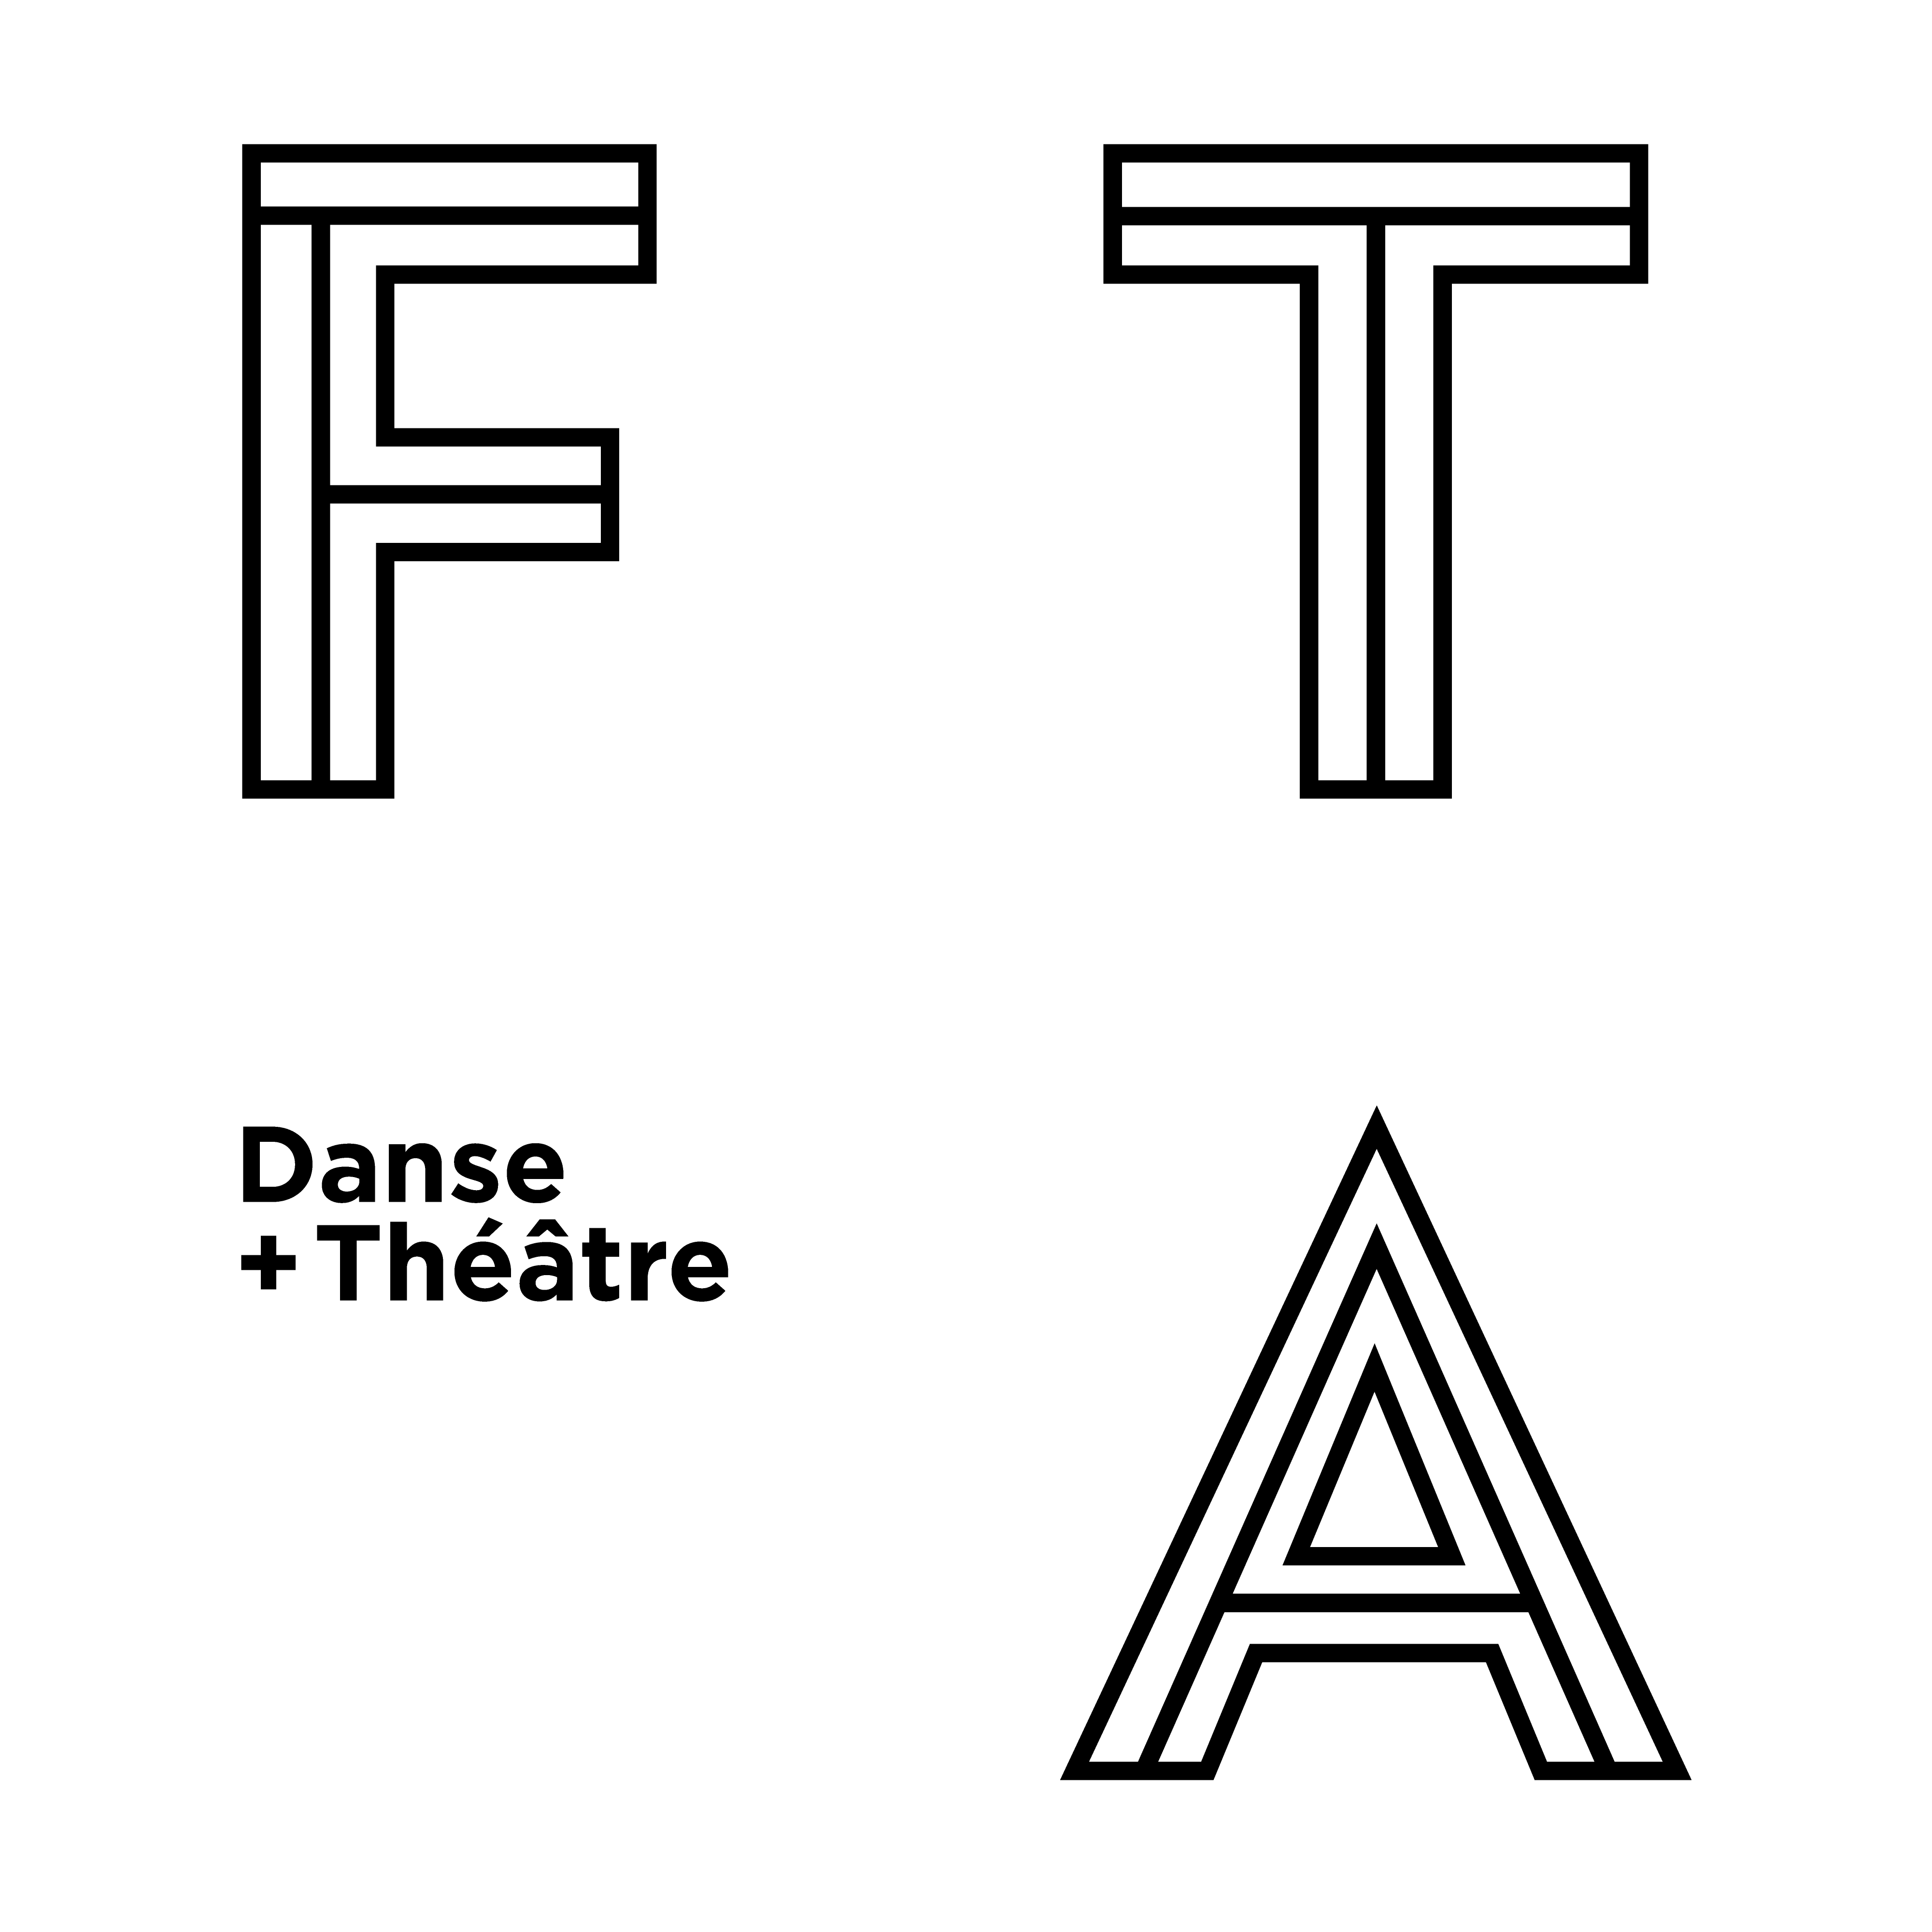 FTA | Festival TransAmériques (Dance + Theatre) logo